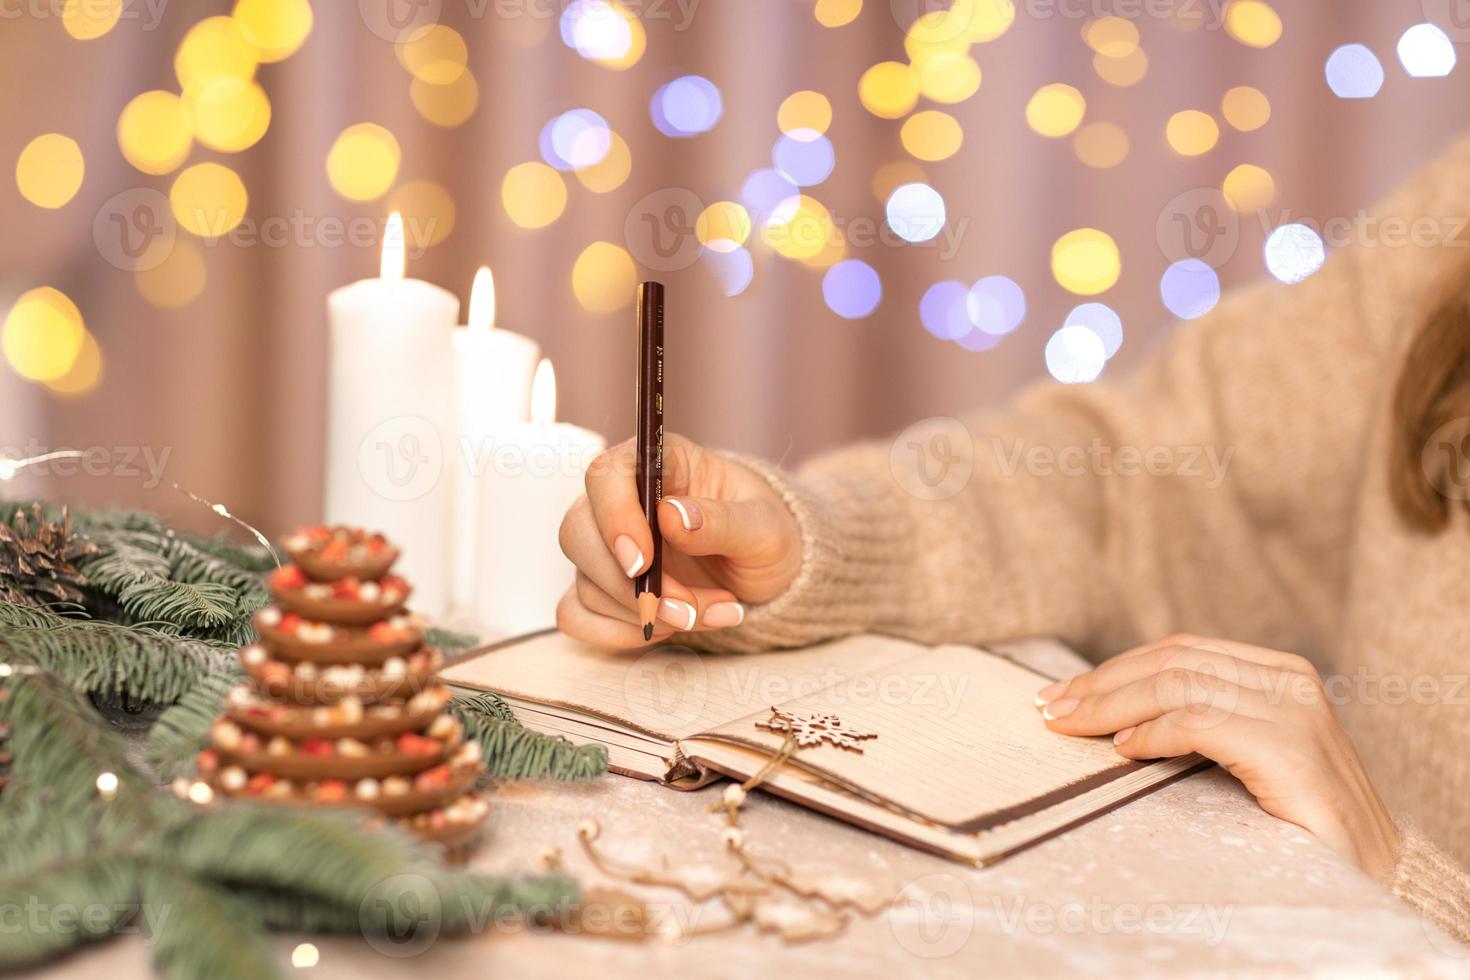 lista de deseos para el concepto de navidad de año nuevo escribiendo en el cuaderno. manos de mujer sosteniendo la pluma. planes de metas. fondo de color beige. plan para el próximo año foto